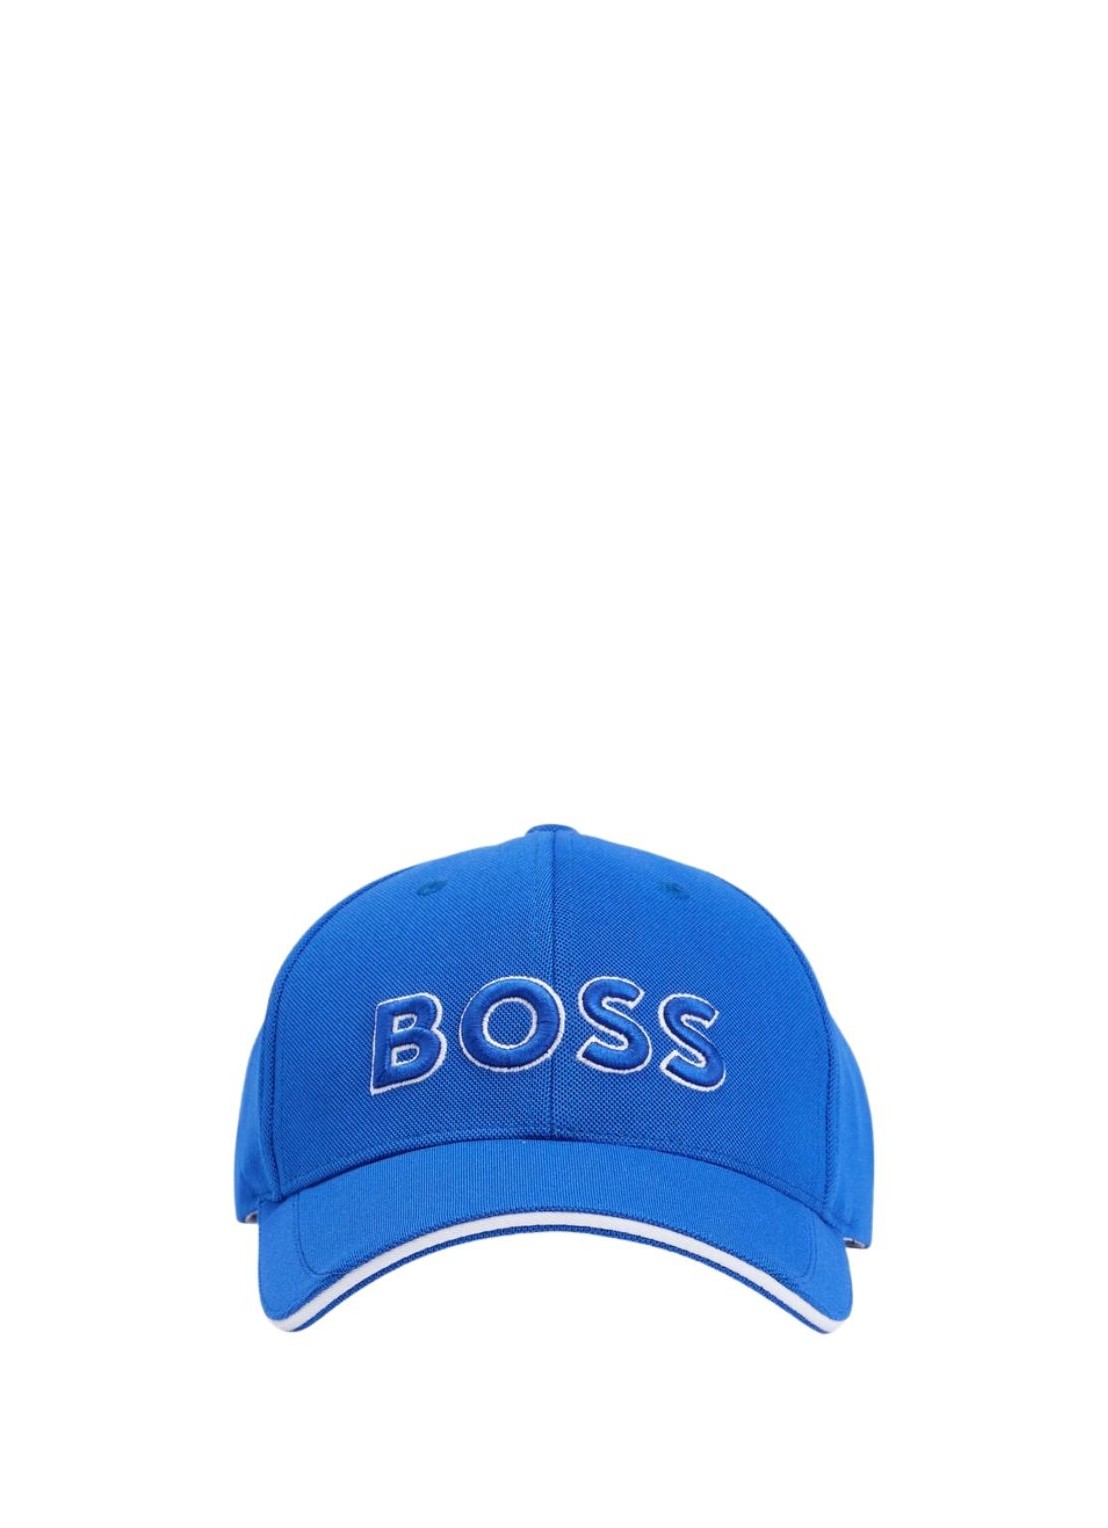 boss cap-us-1 - 438 50496291 T/U Talla